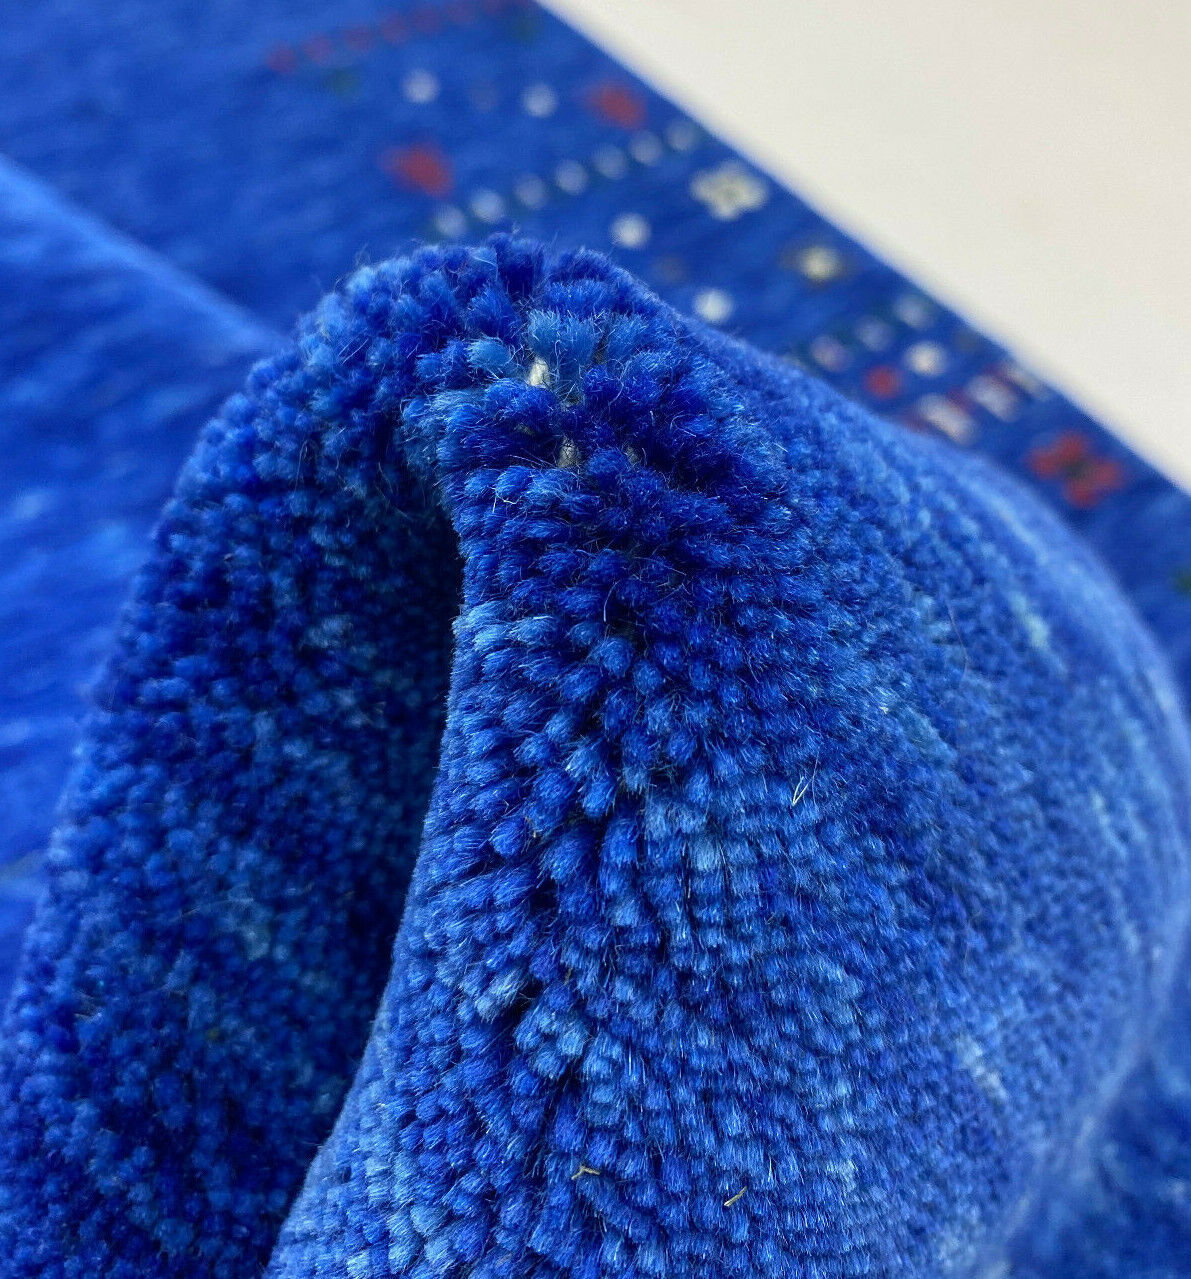 Teppich 100% Wolle Lori Handgewebt Blau Orientteppich 125x183 cm S109